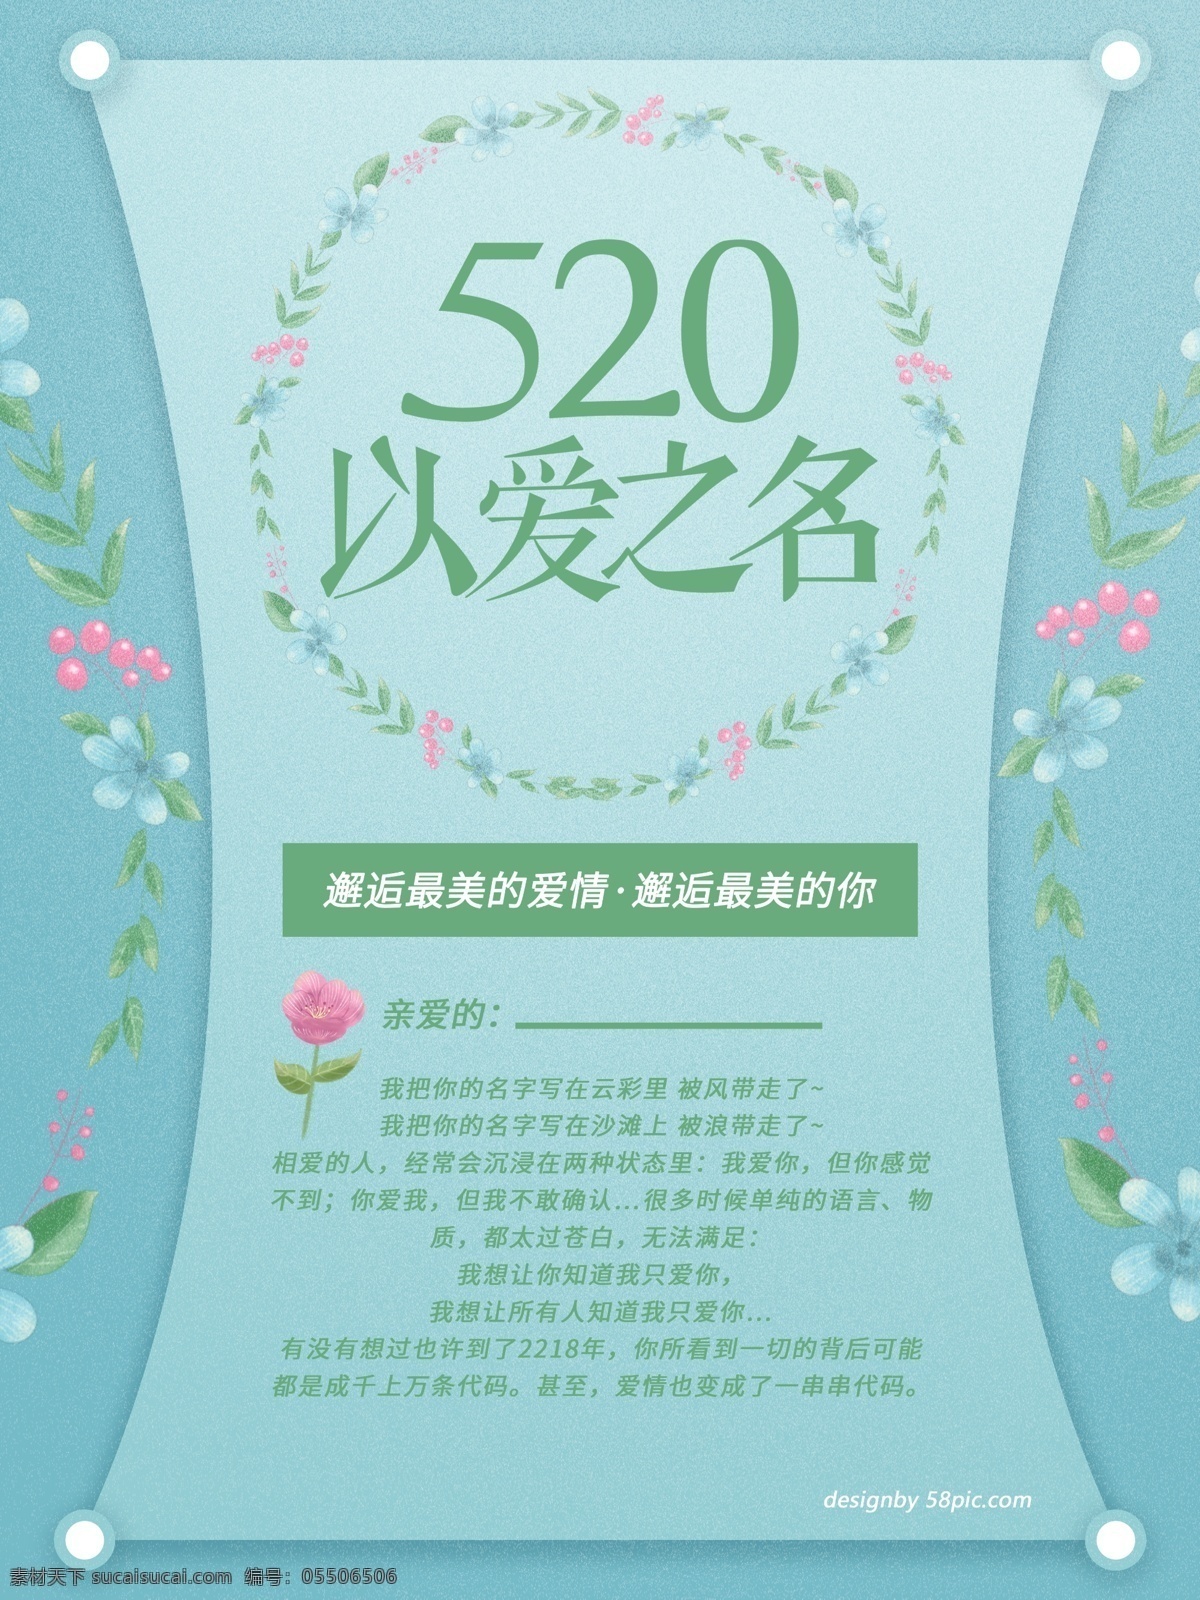 520 爱 之名 简约 版 绿色 海报 以爱之名 爱情海报 简约版 绿色海报